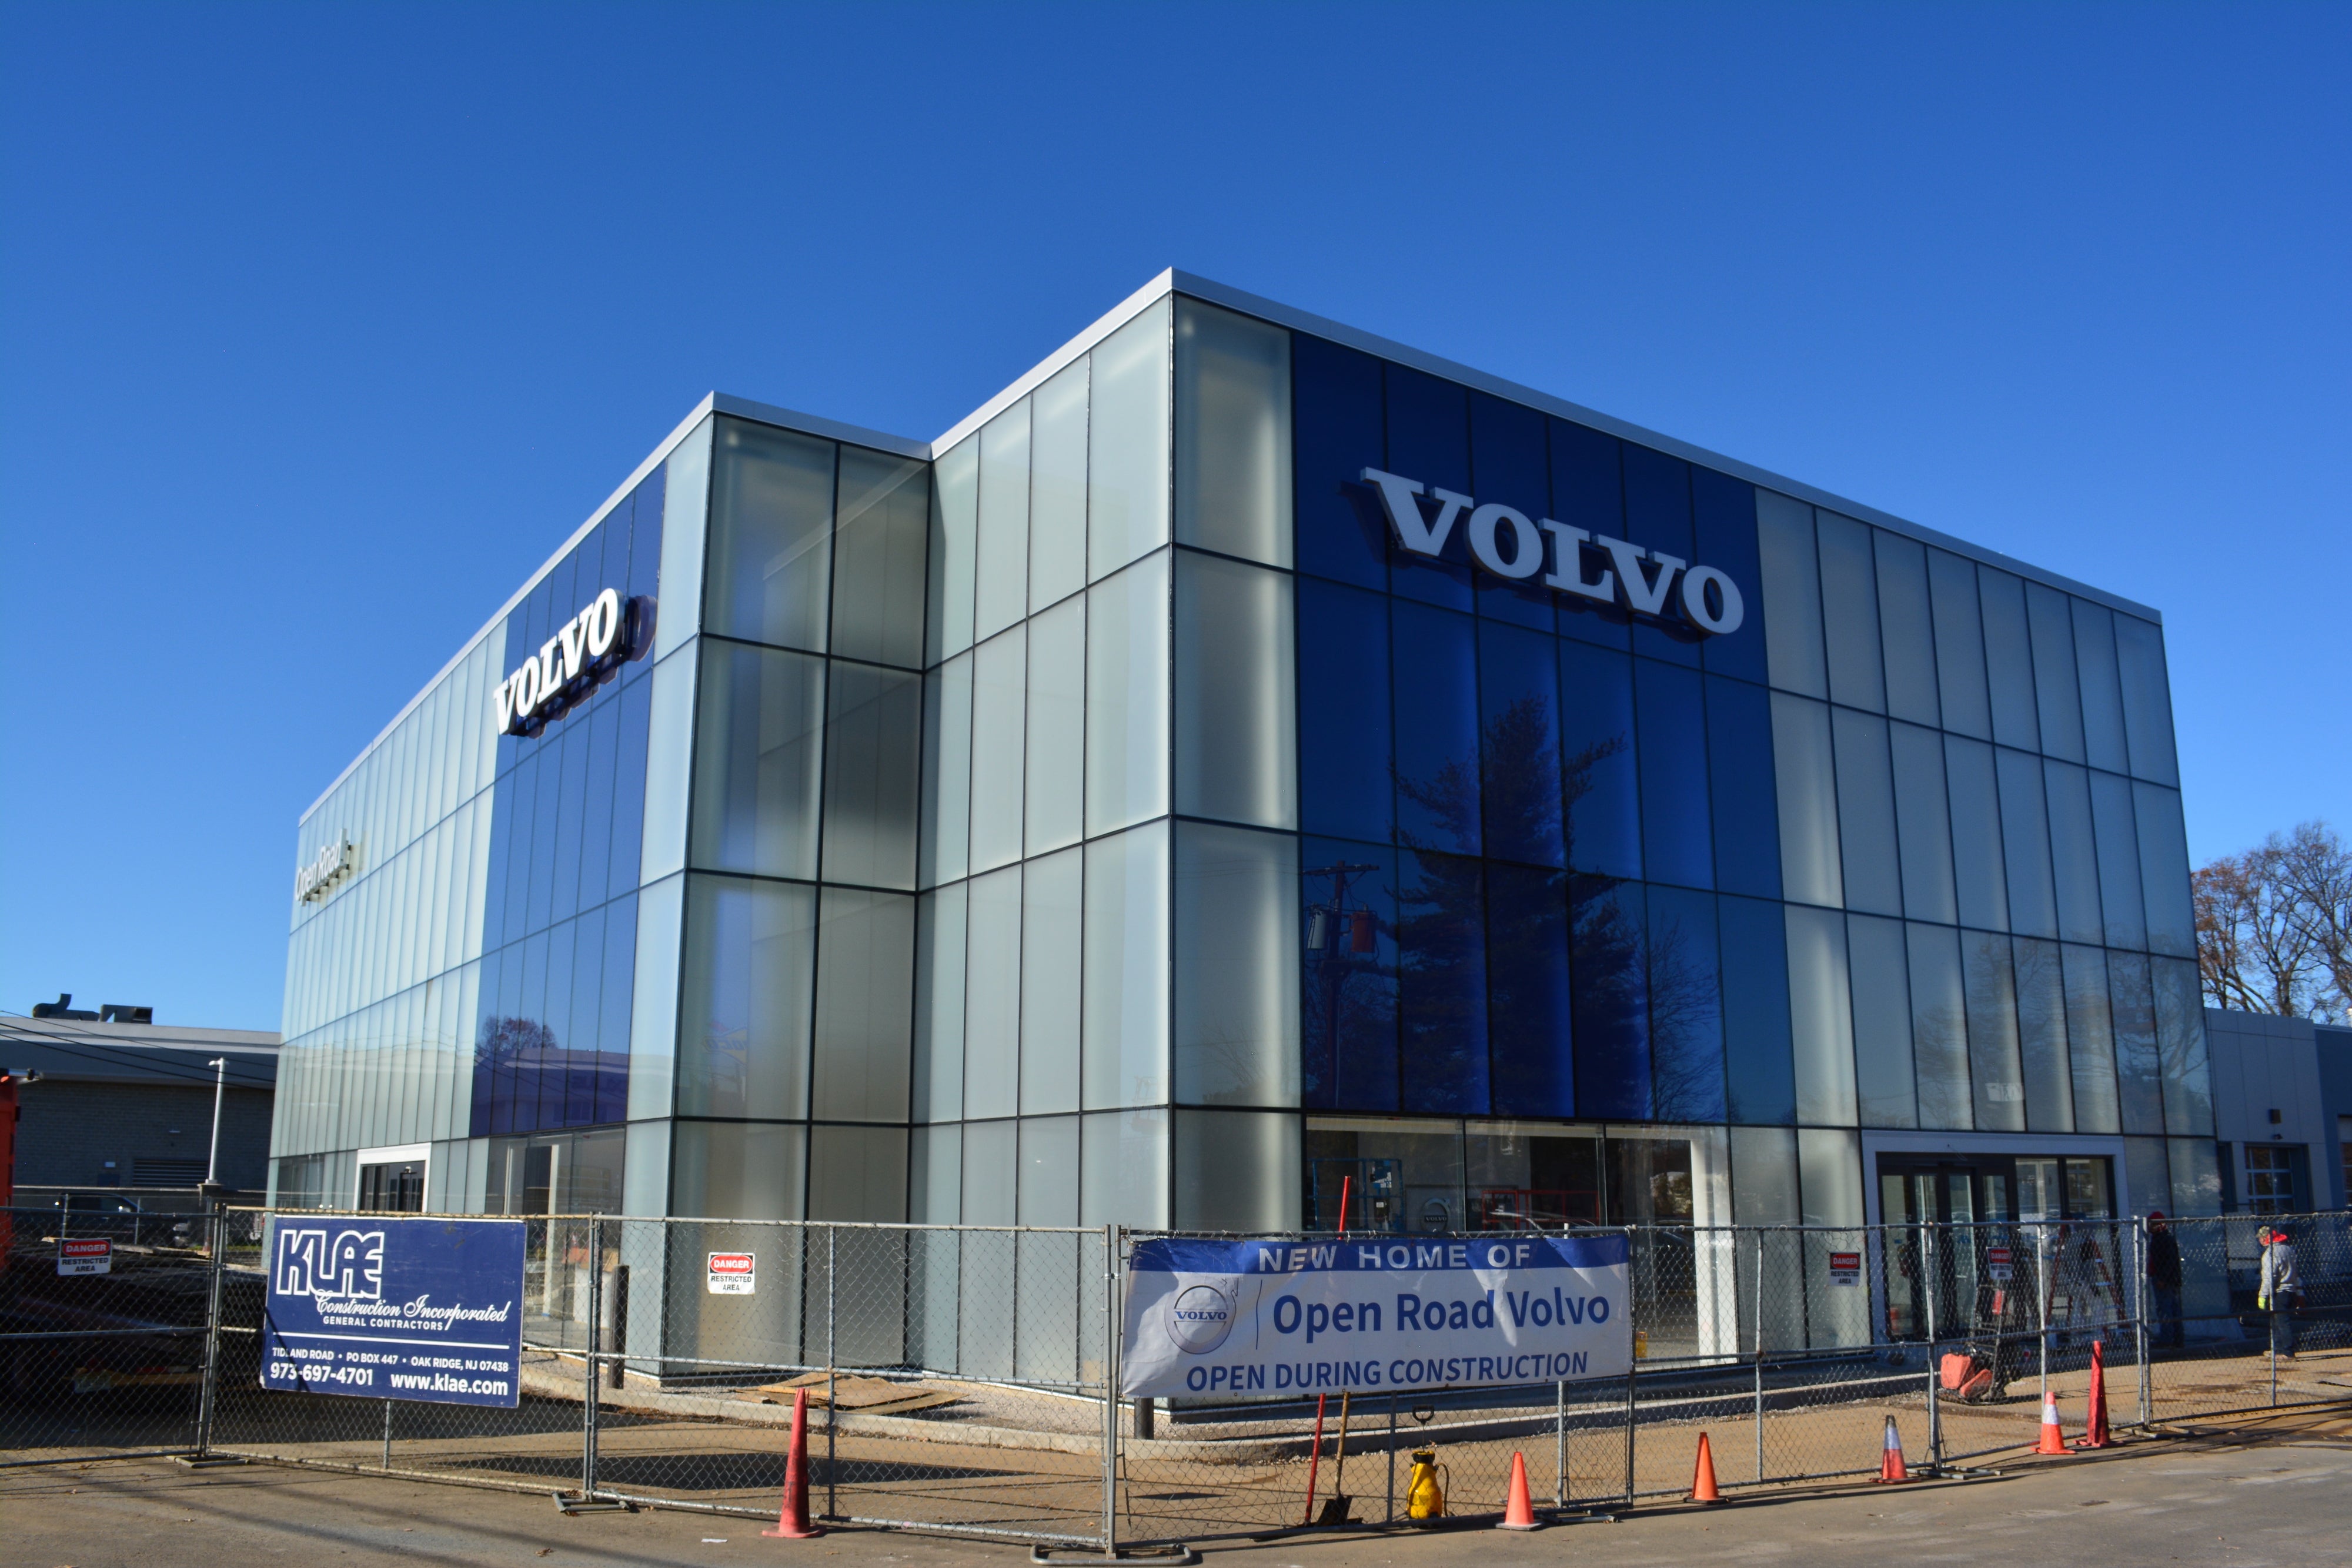 Volvo Edison's New Showroom